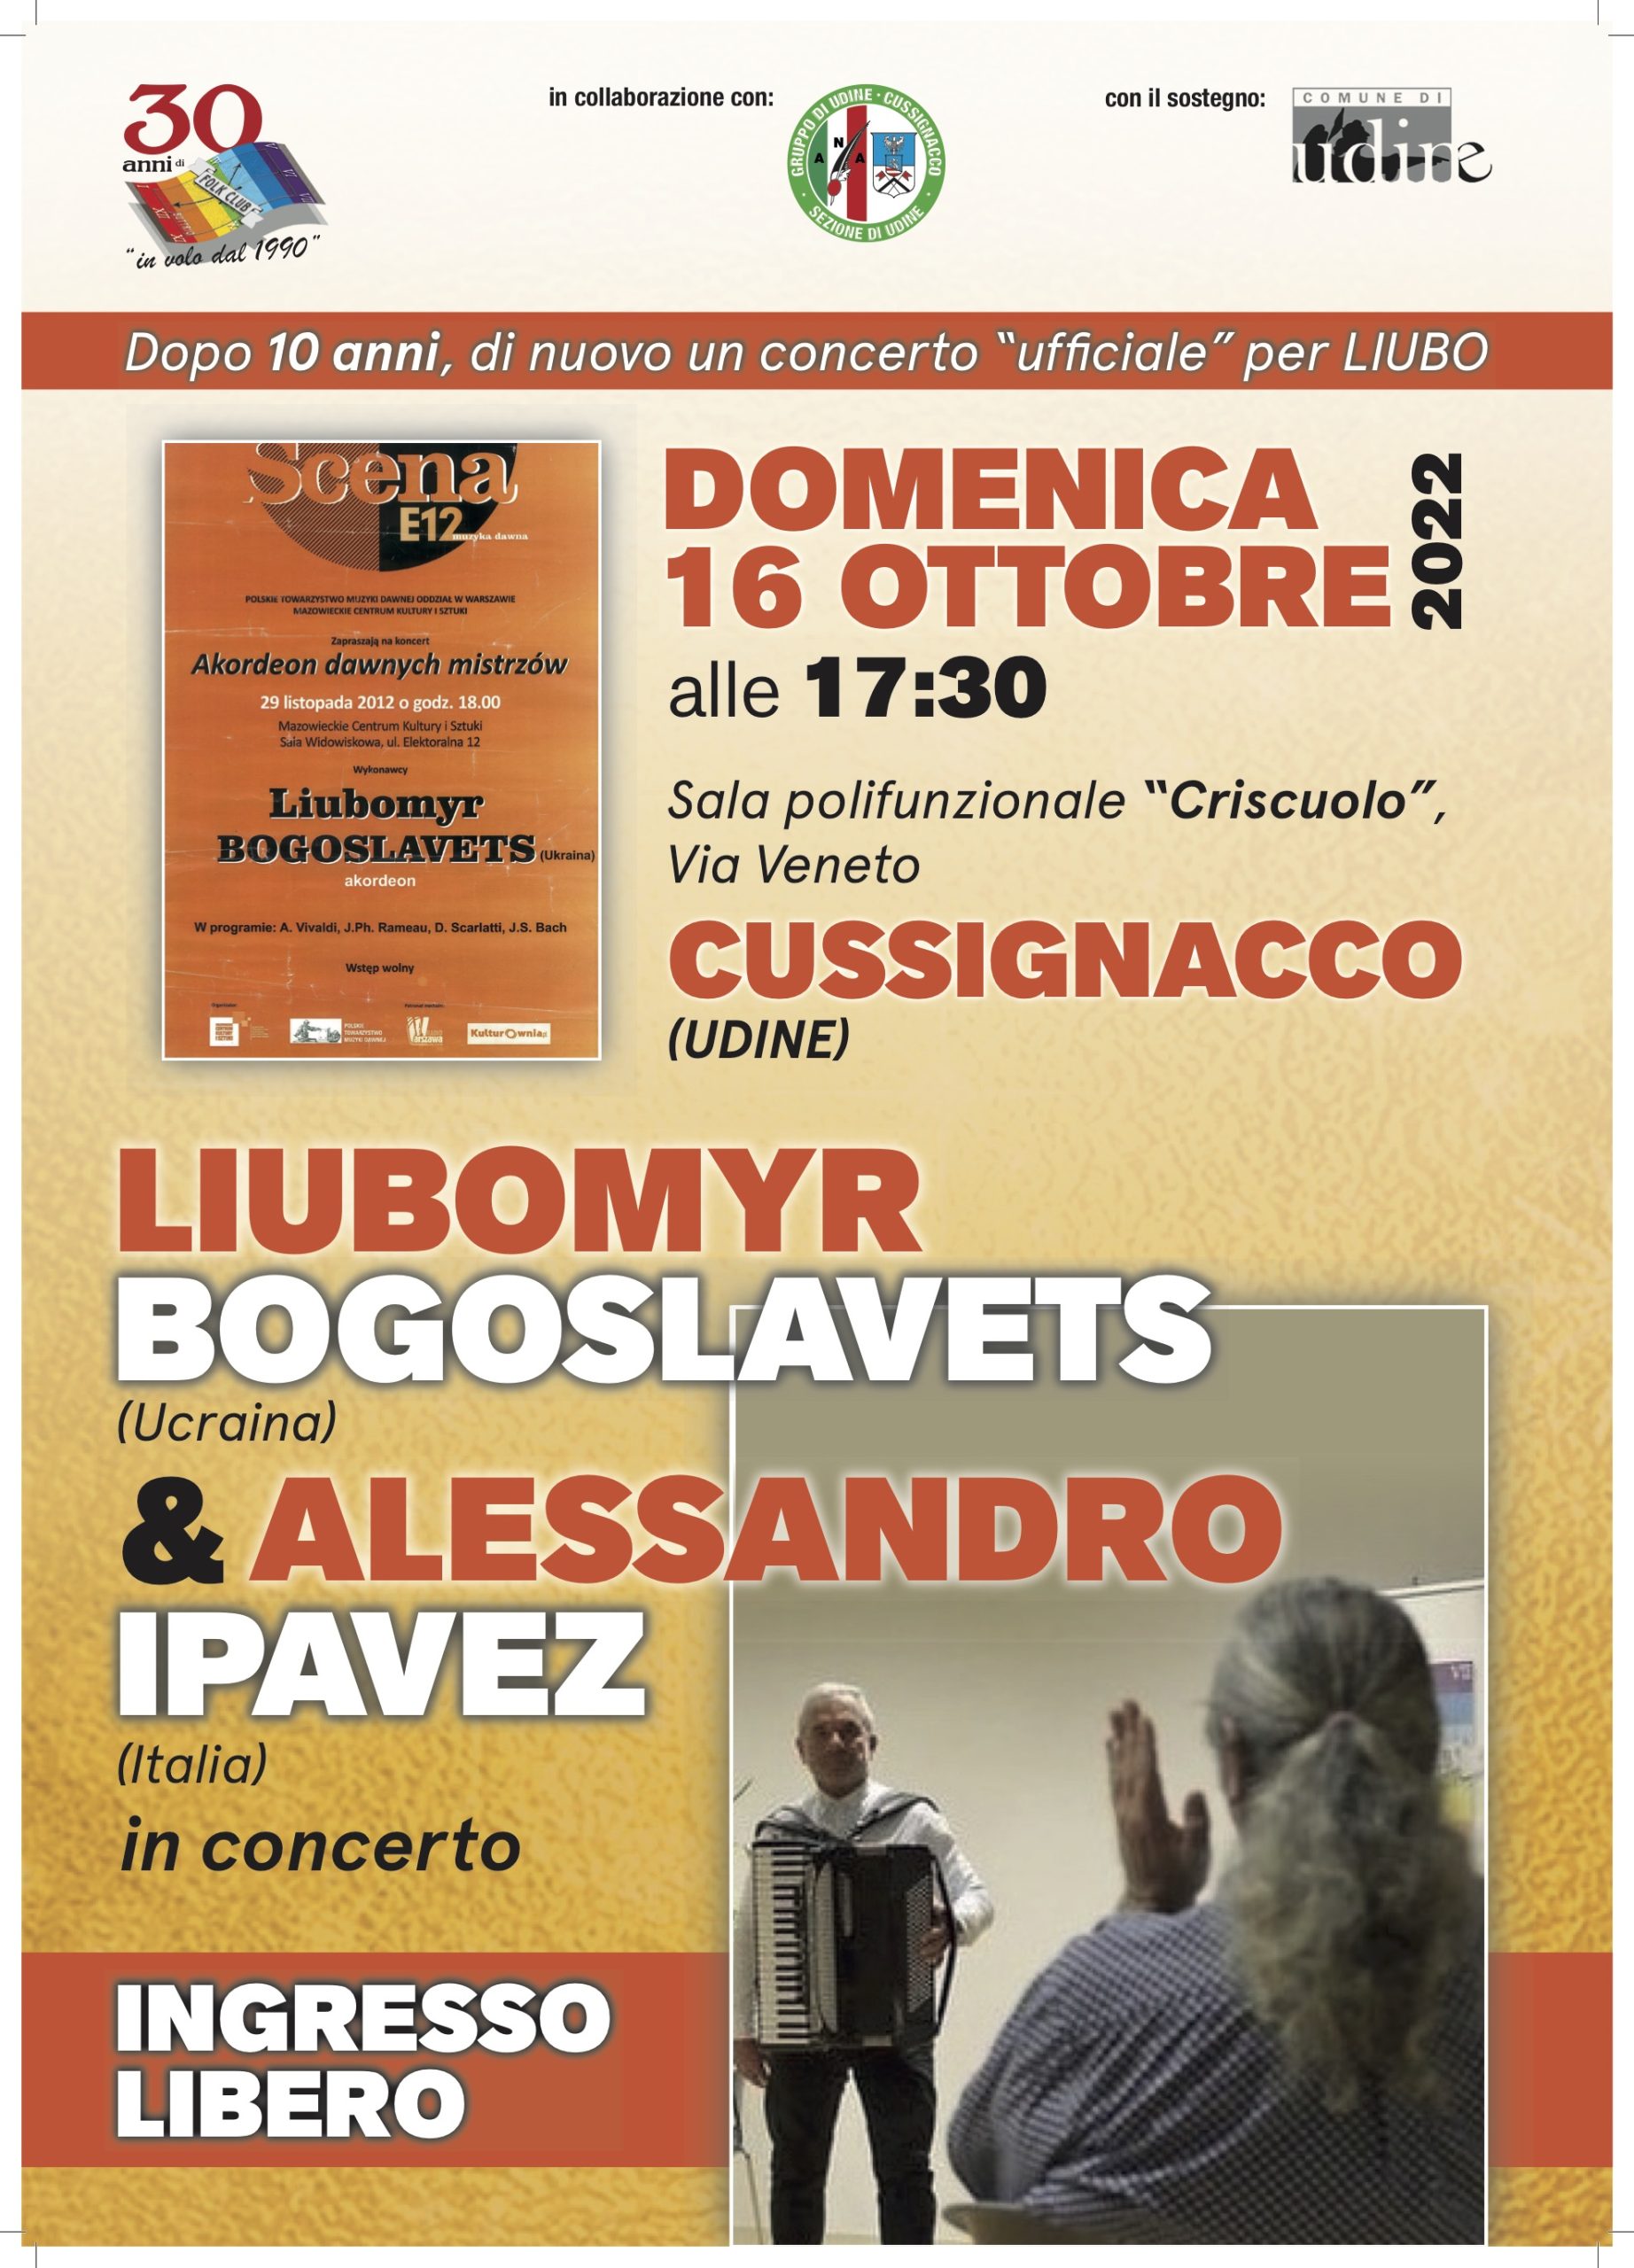 Scopri di più sull'articolo Liubomyr Bogoslavets & Alessandro Ipavez in concerto domenica 16 ottobre a Cussignacco (UD)